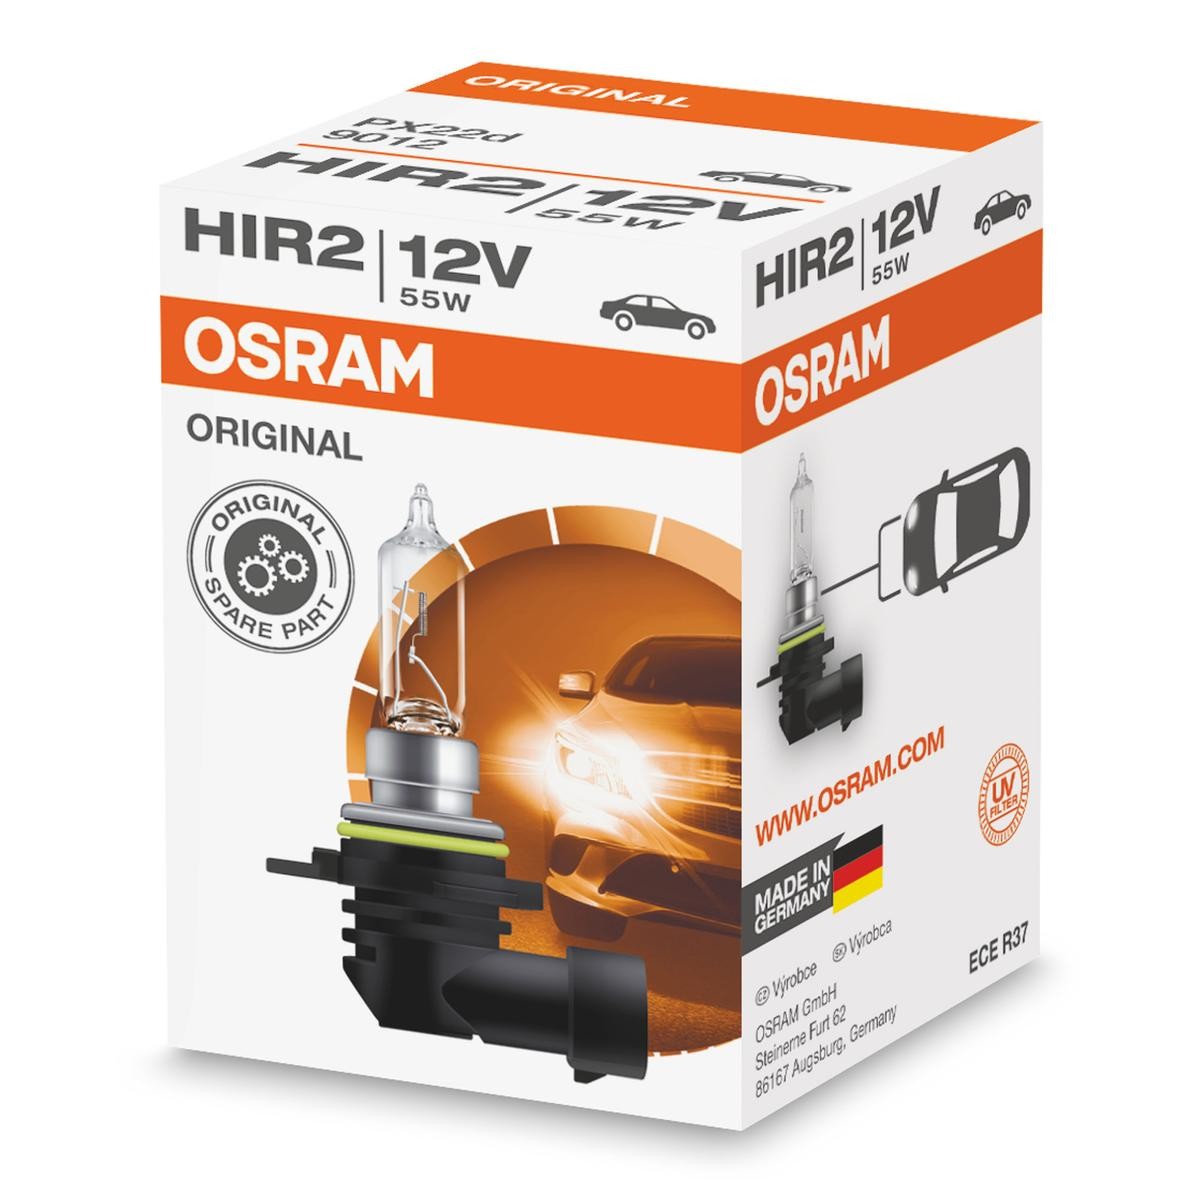 OSRAM 9012 Ampoule longue portée HIR2 12V 55W3200K Halogène ORIGINAL